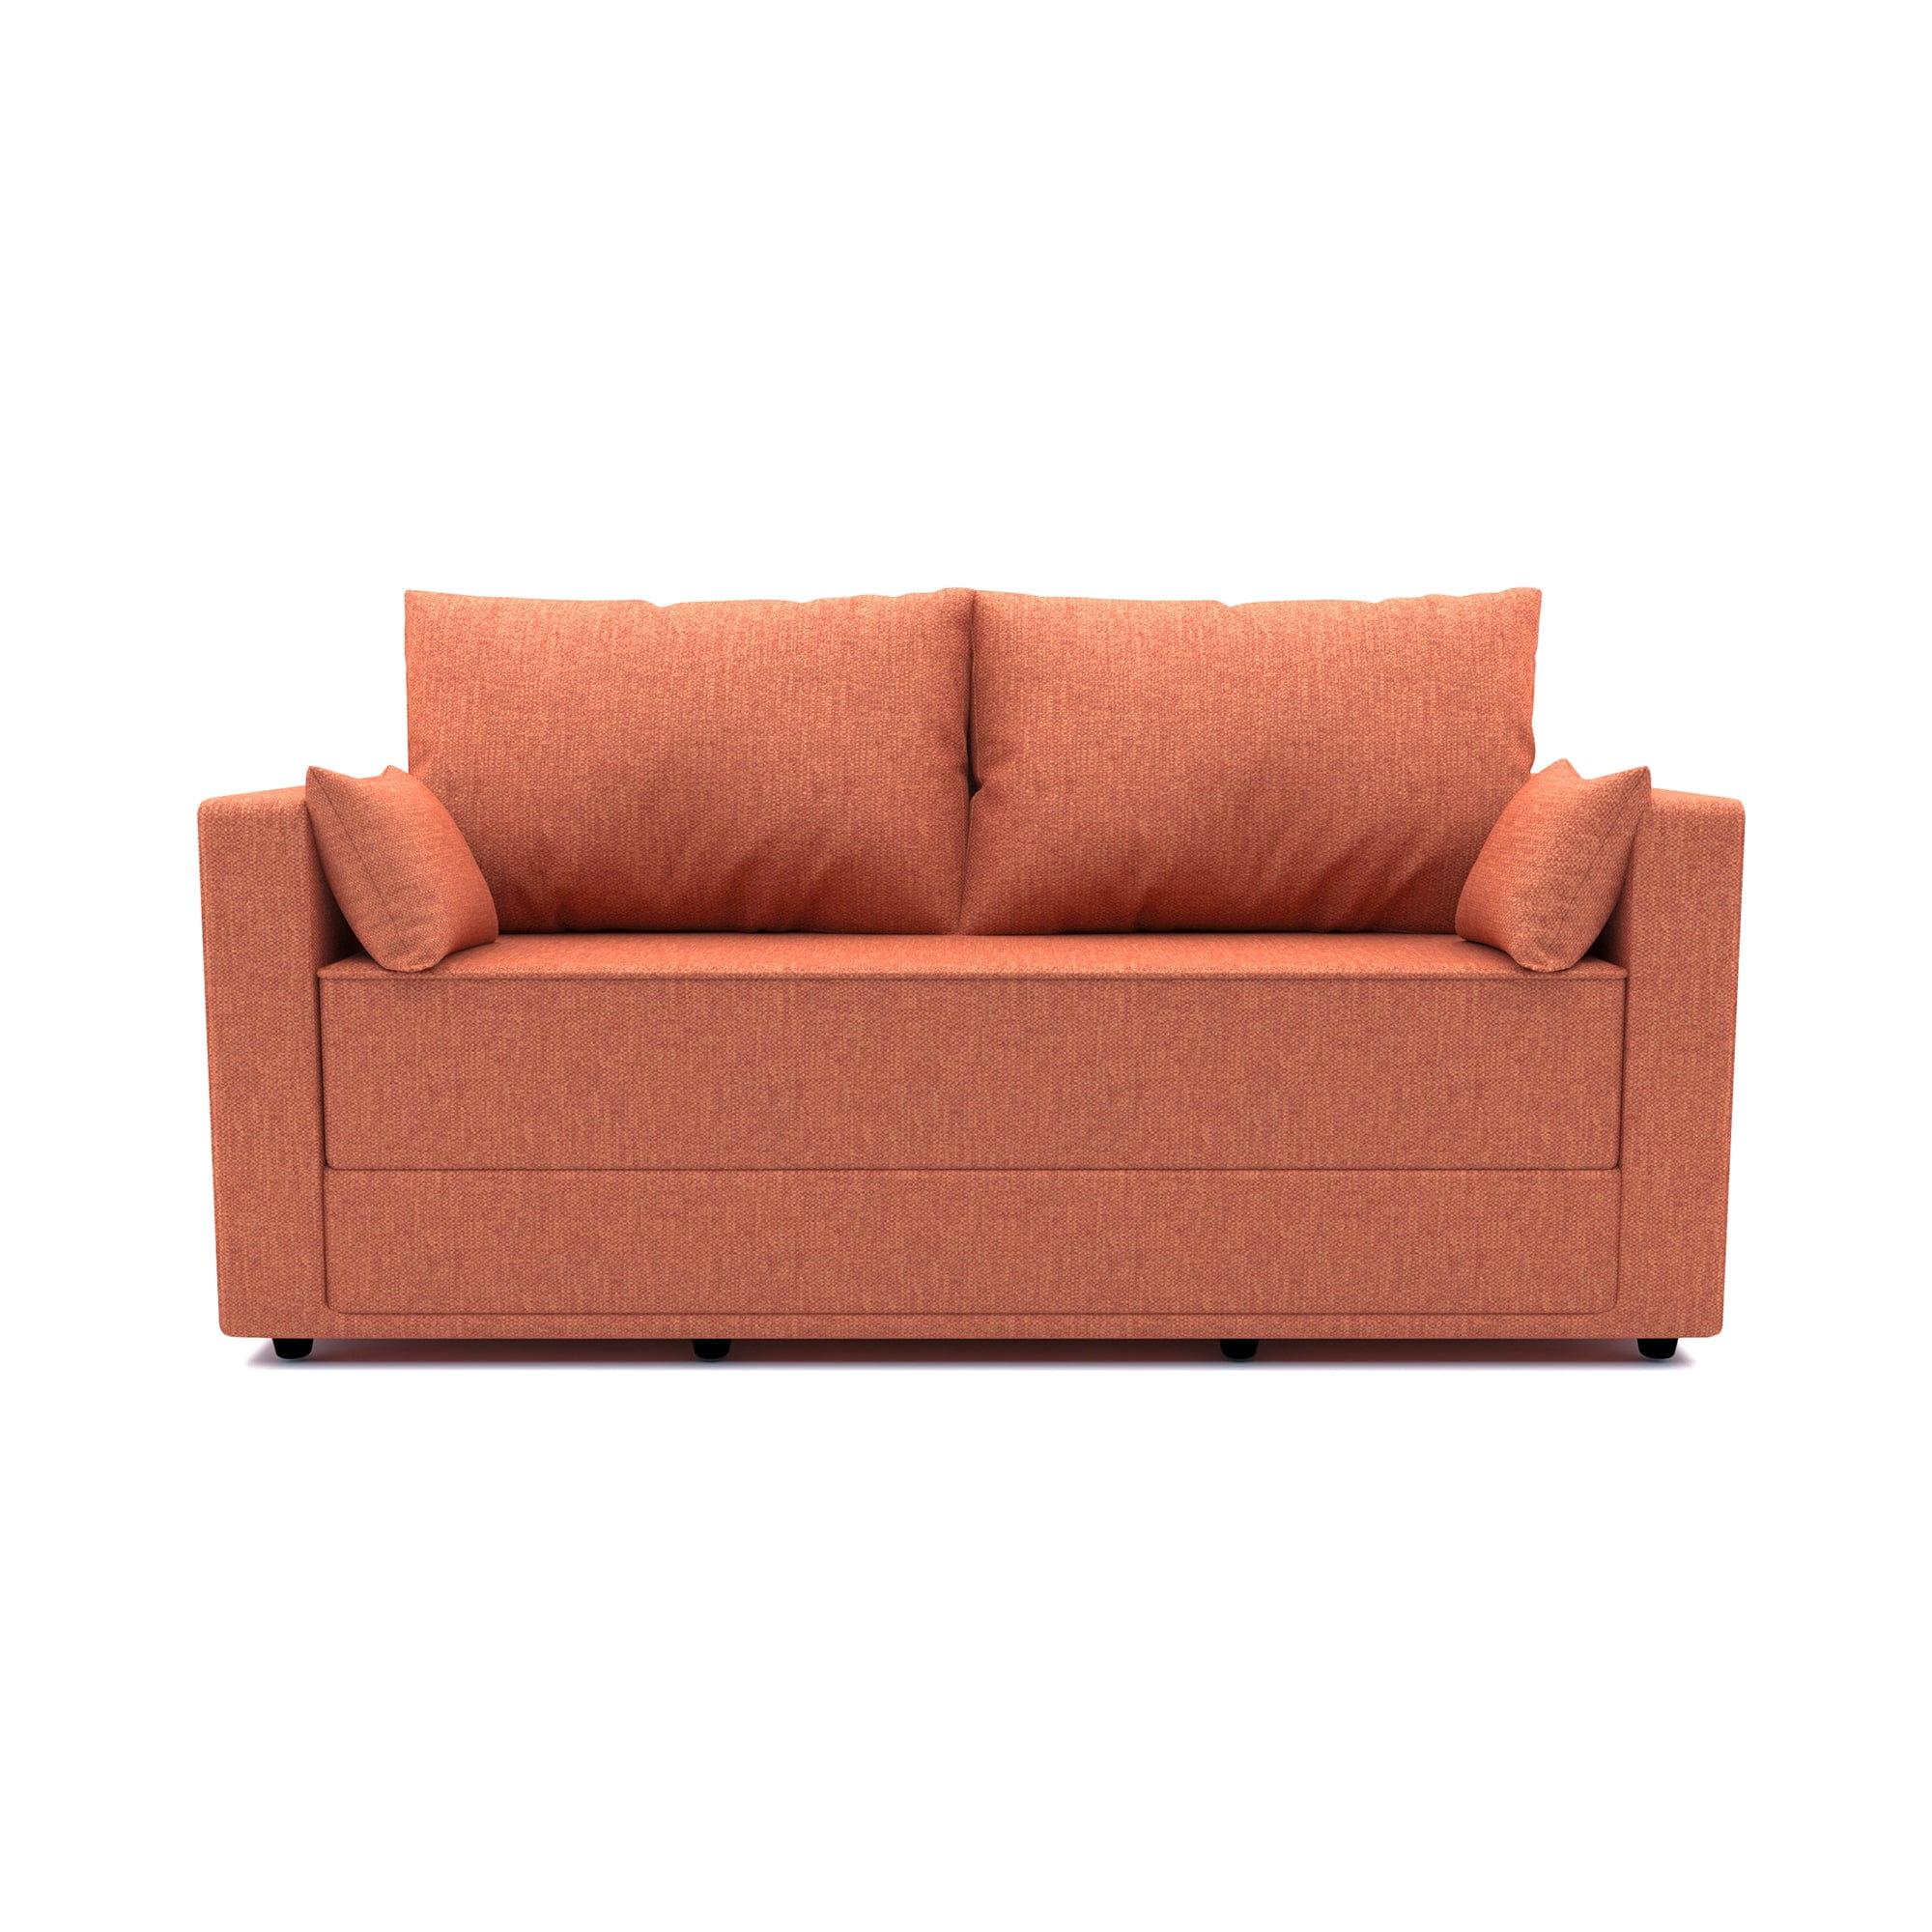 Harmony Sofa Bed - 3 Seater